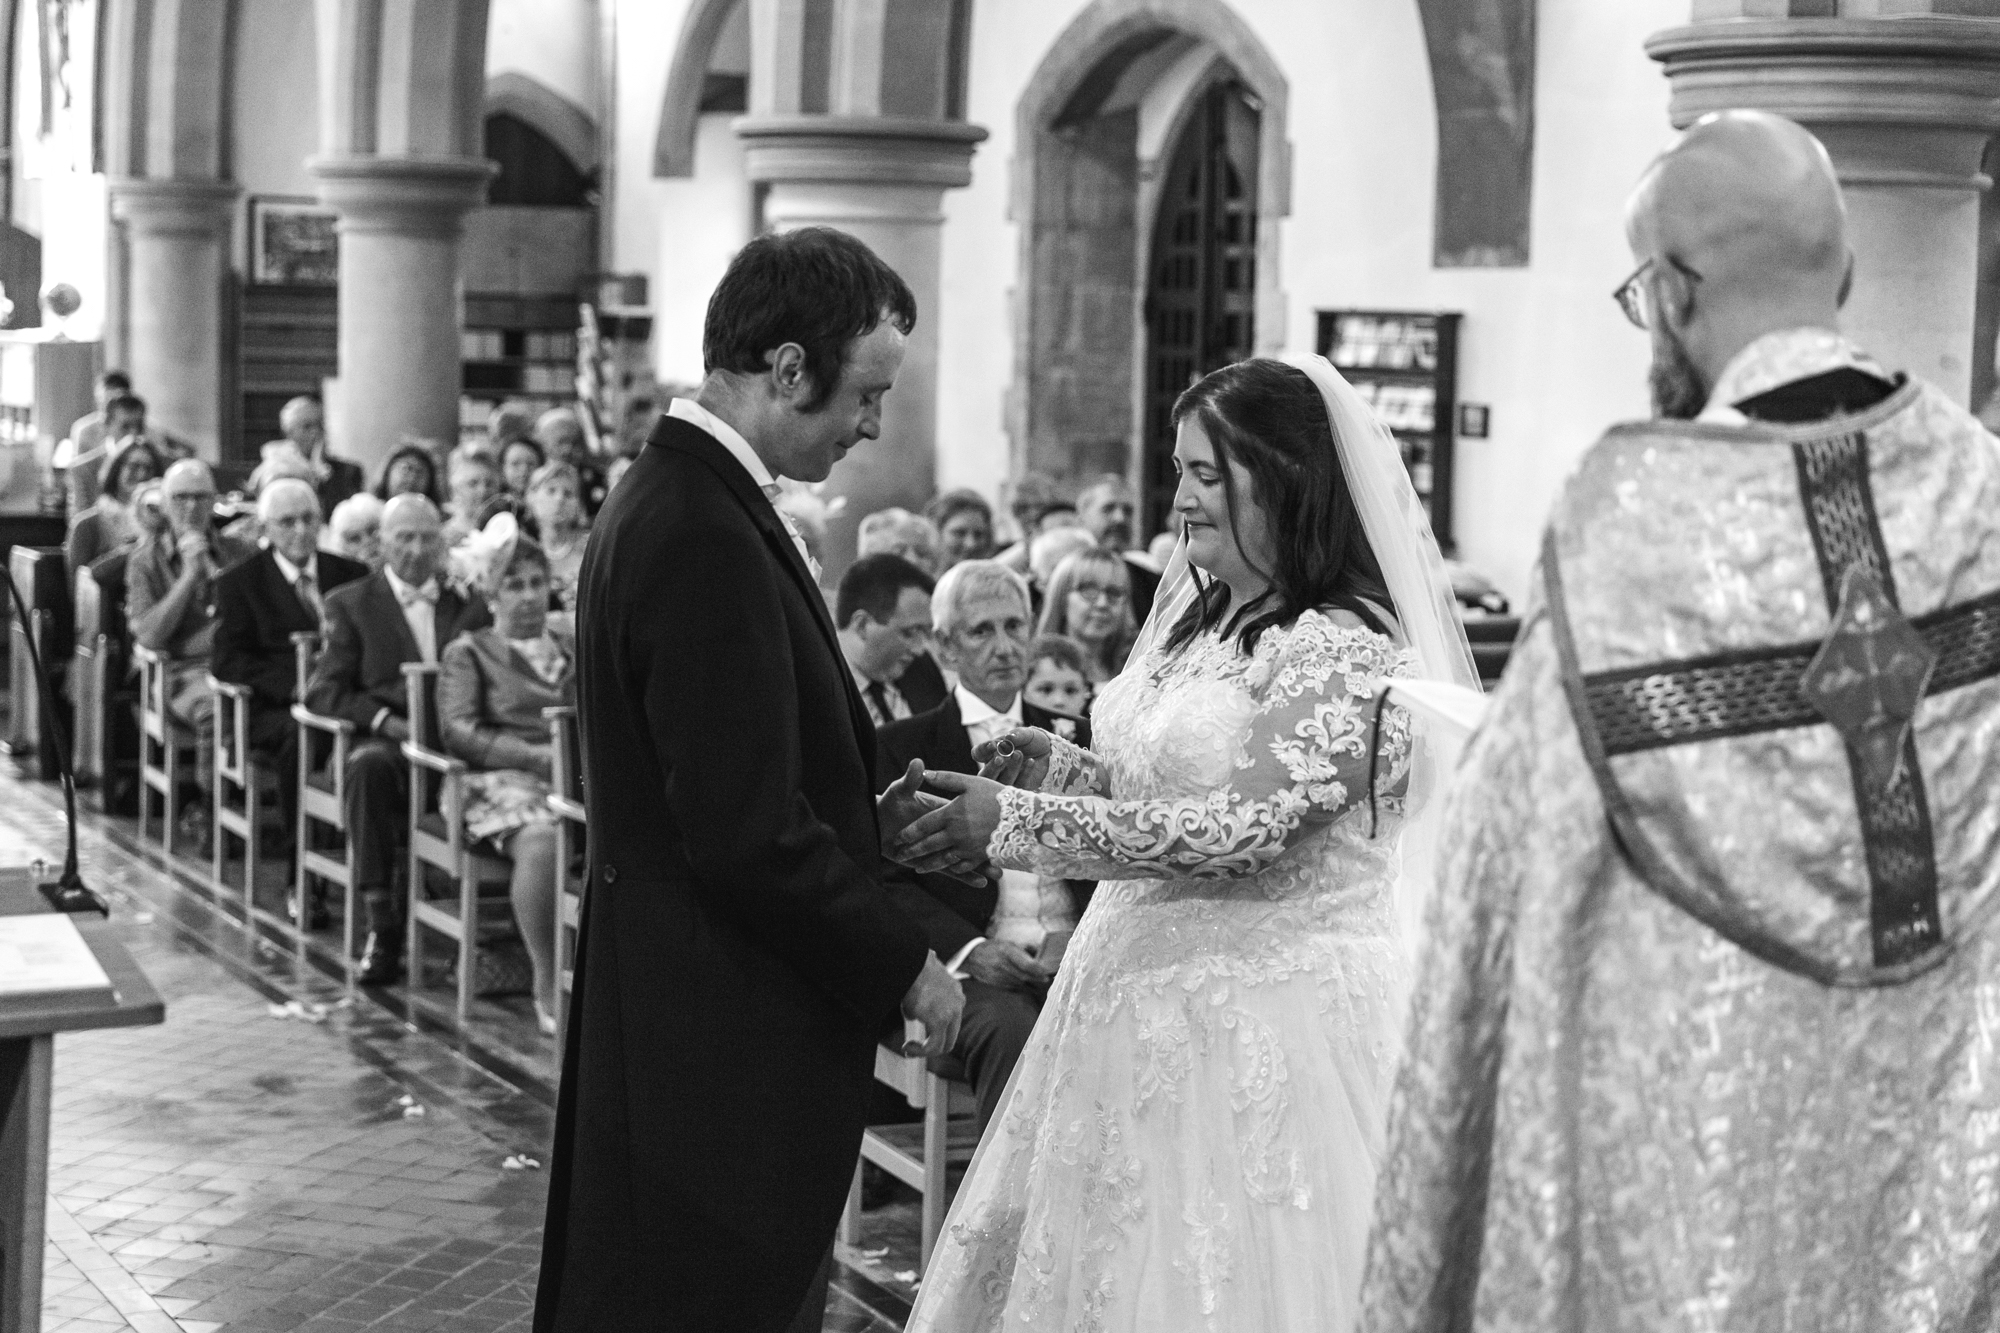 Wedding Vows at St Martins Church Caerphilly